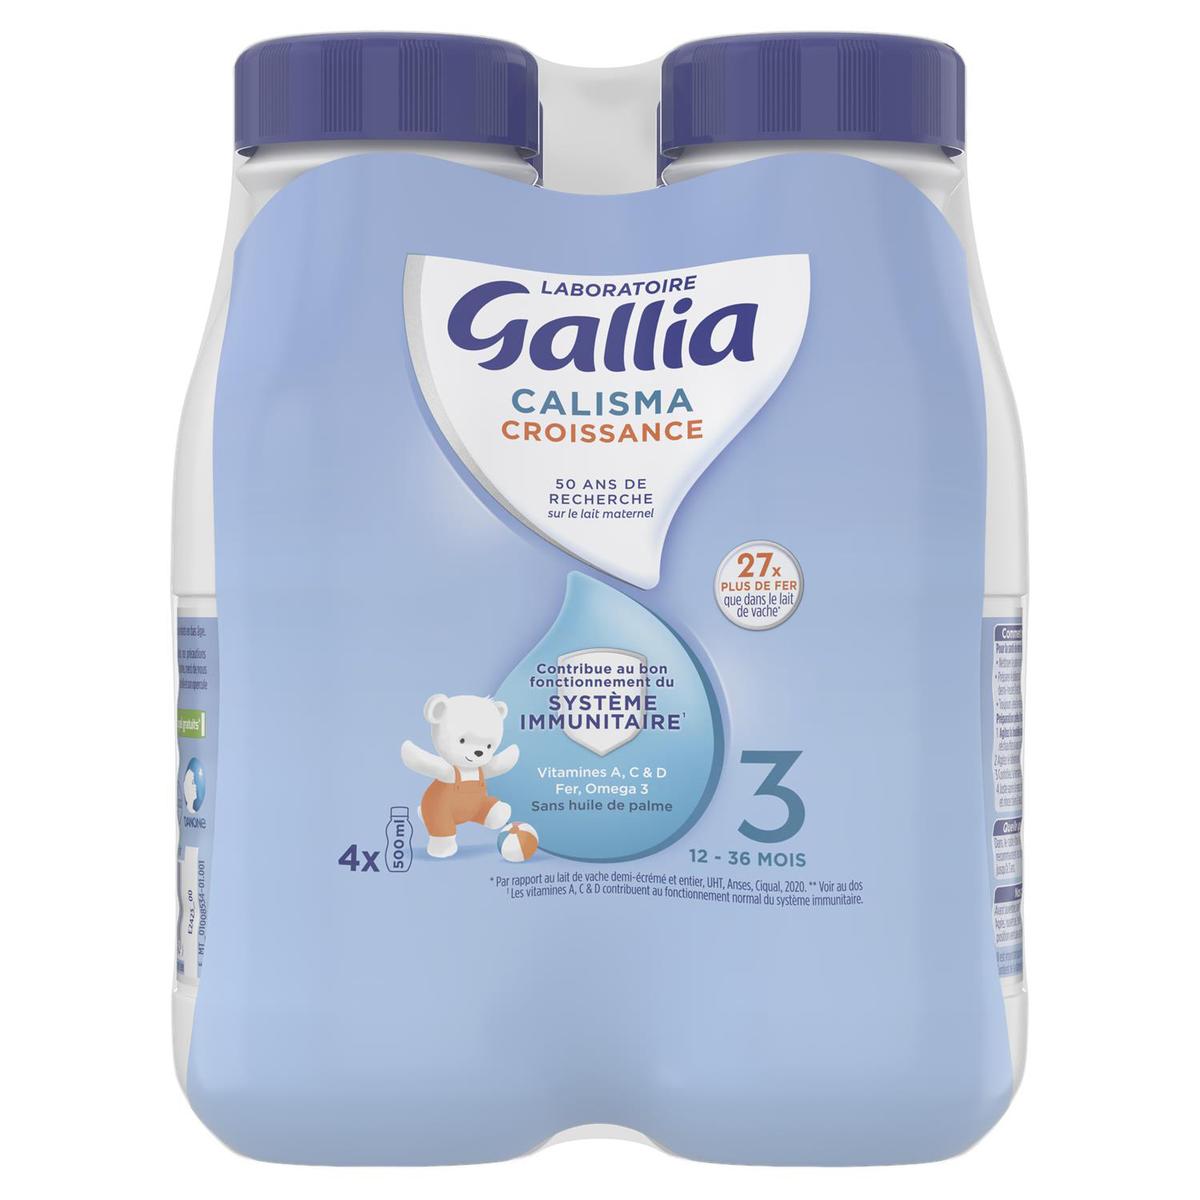 Gallia calisma croissance 3 bio lait poudre 800g